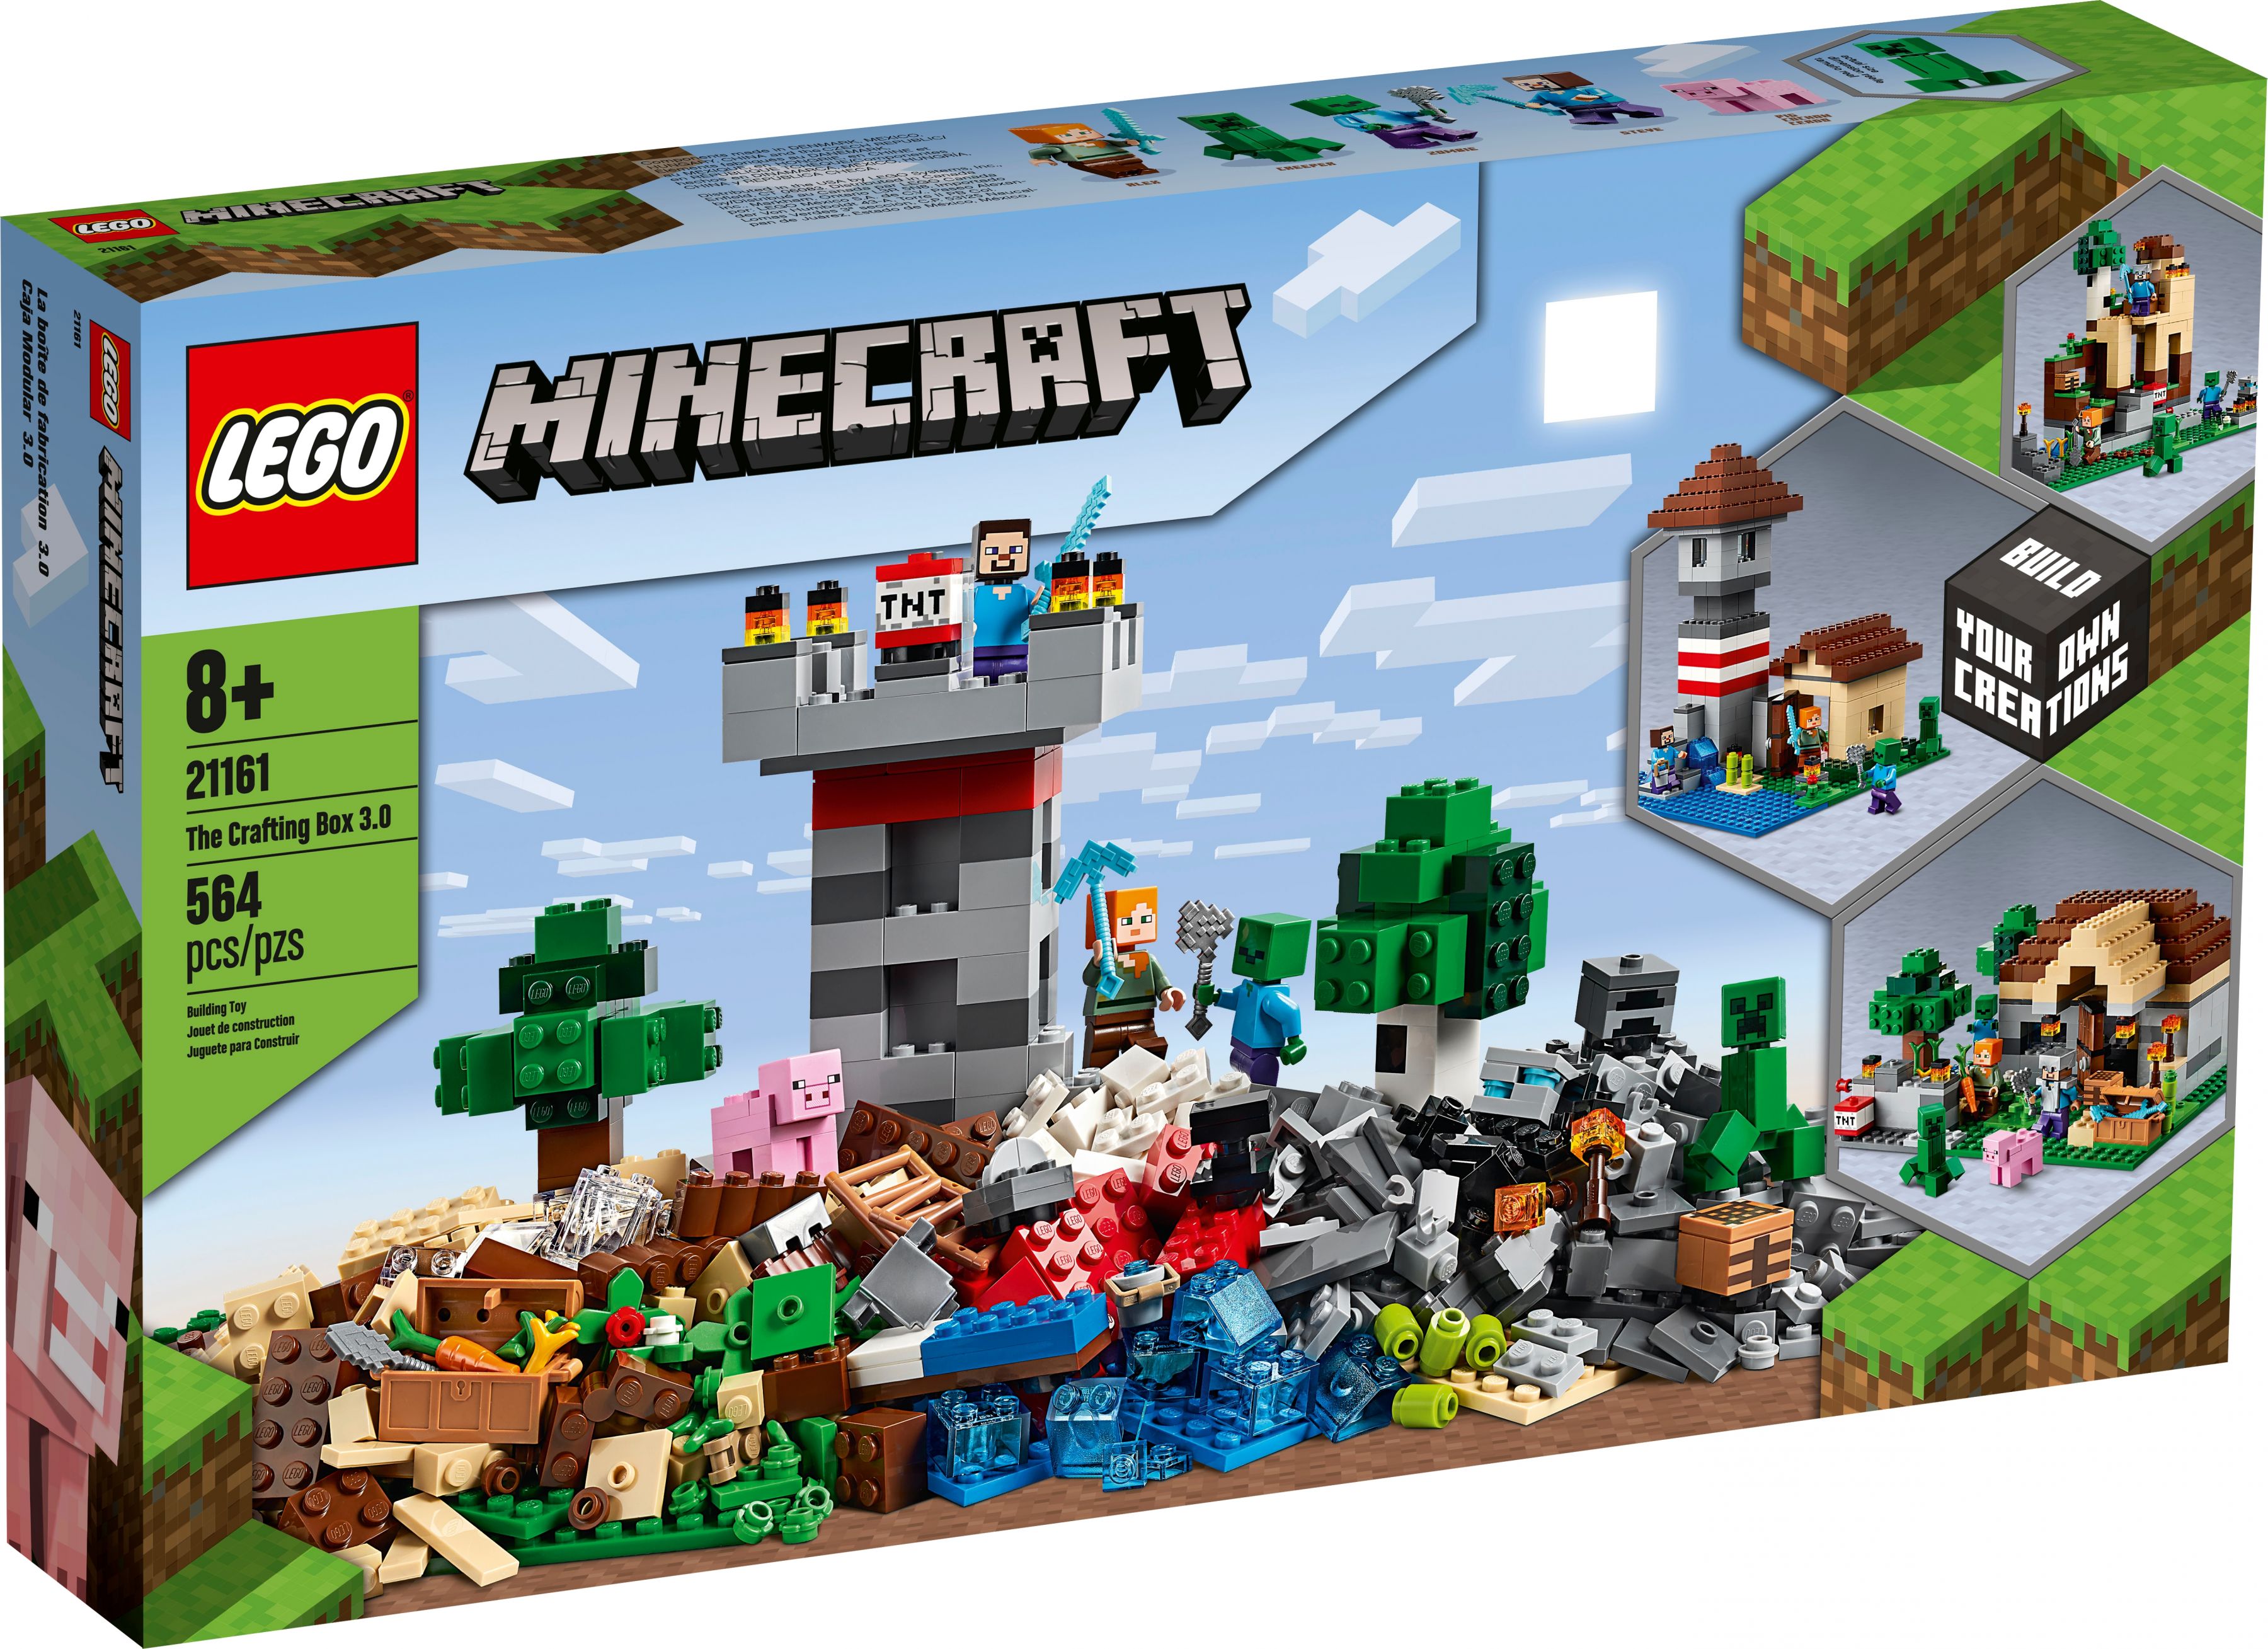 LEGO Minecraft 21161 Die Crafting-Box 3.0 LEGO_21161_alt1.jpg